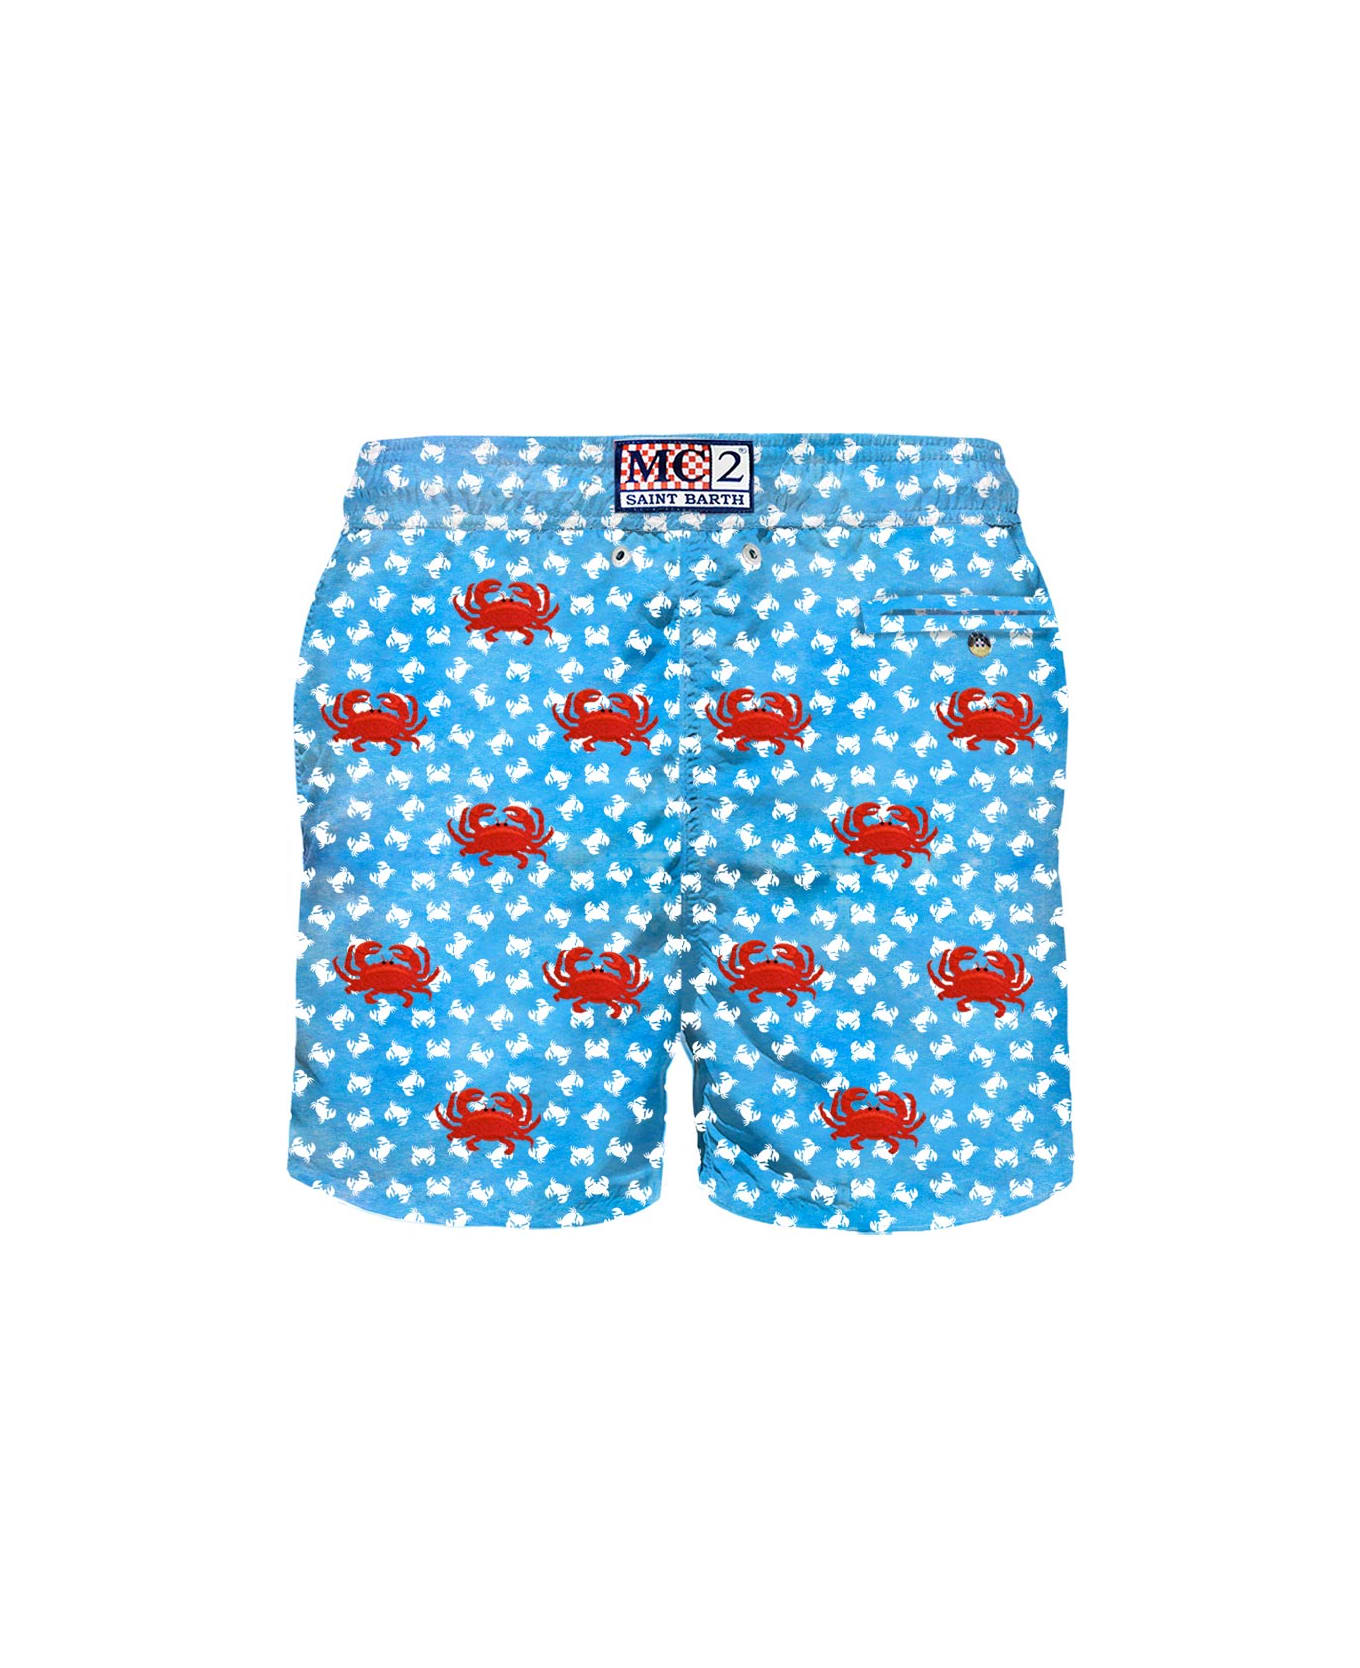 MC2 Saint Barth Man Light Fabric Swim Shorts With Crabs Embroidery - BLUE スイムトランクス